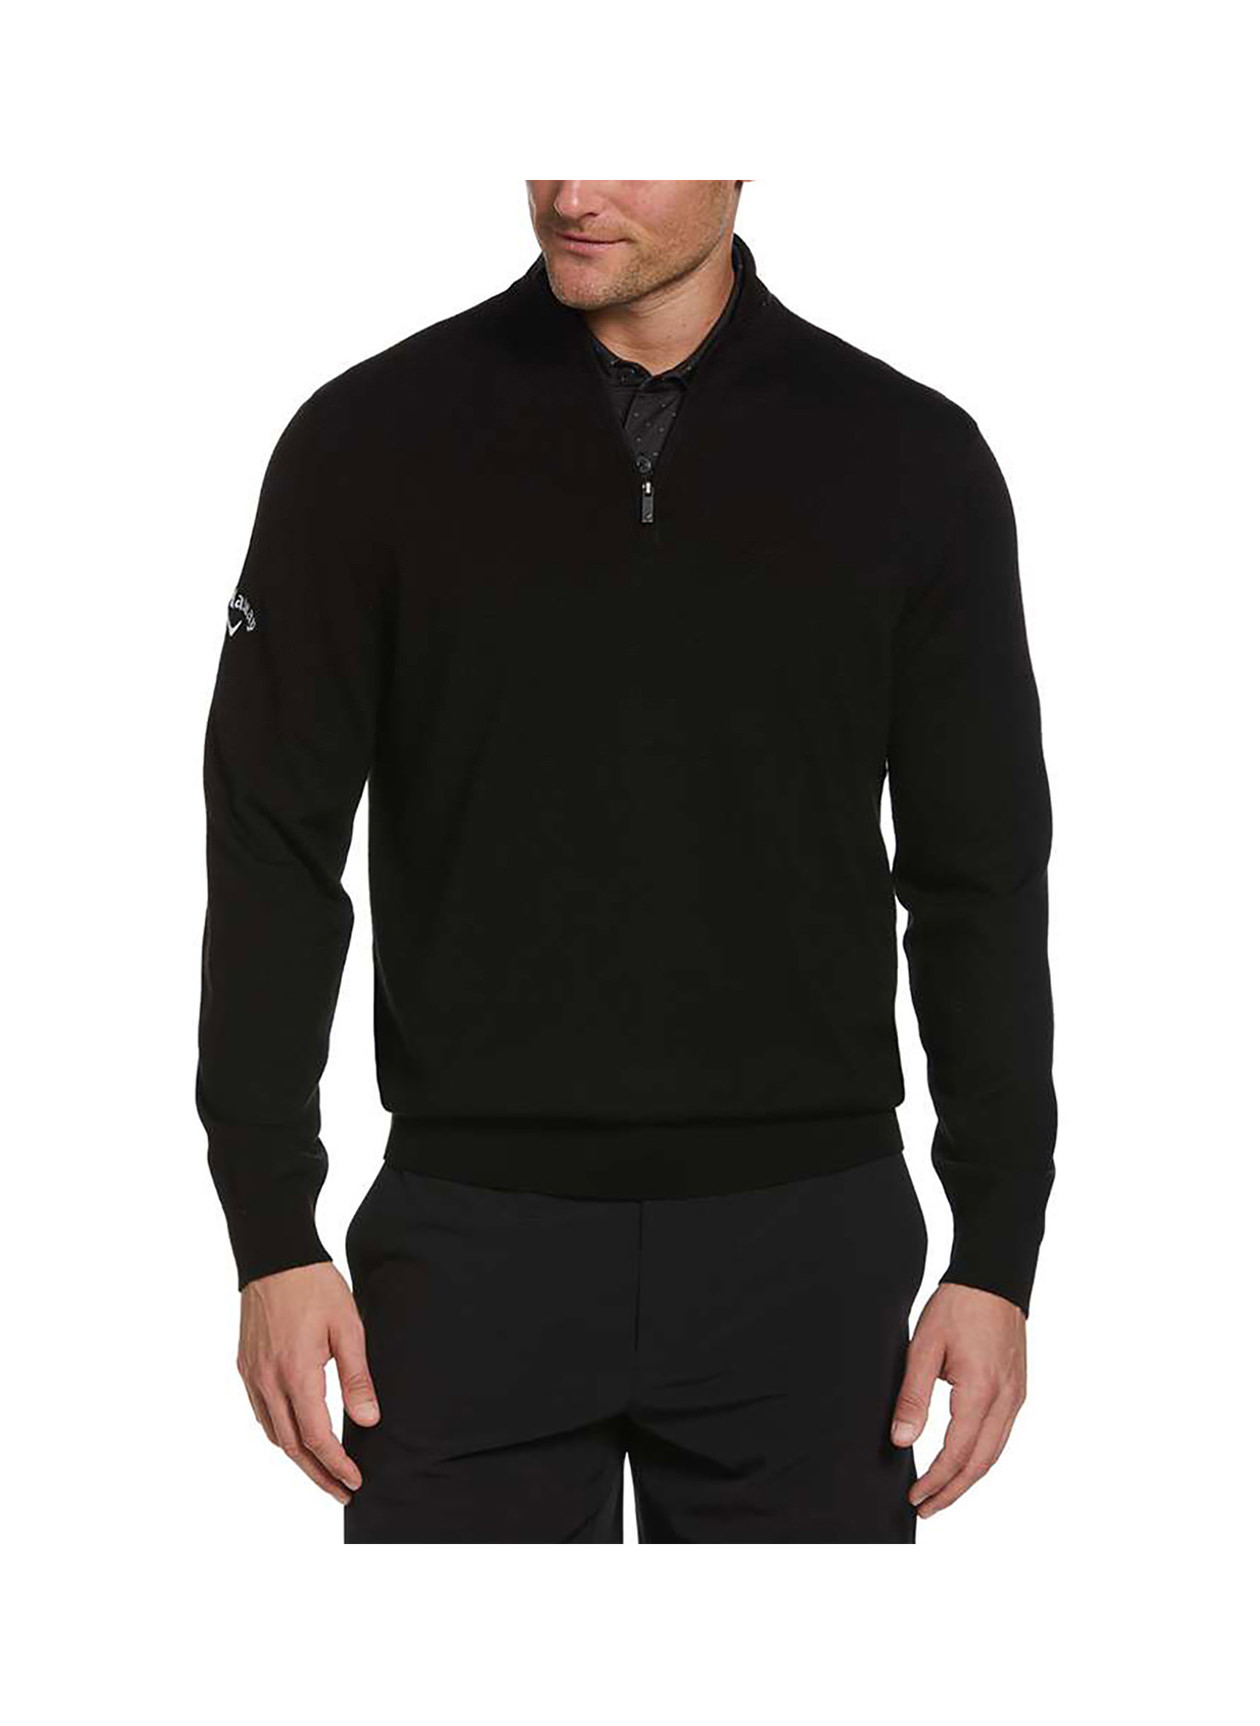 Callaway Men's Black Ink Golf Quarter-Zip Merino Sweater